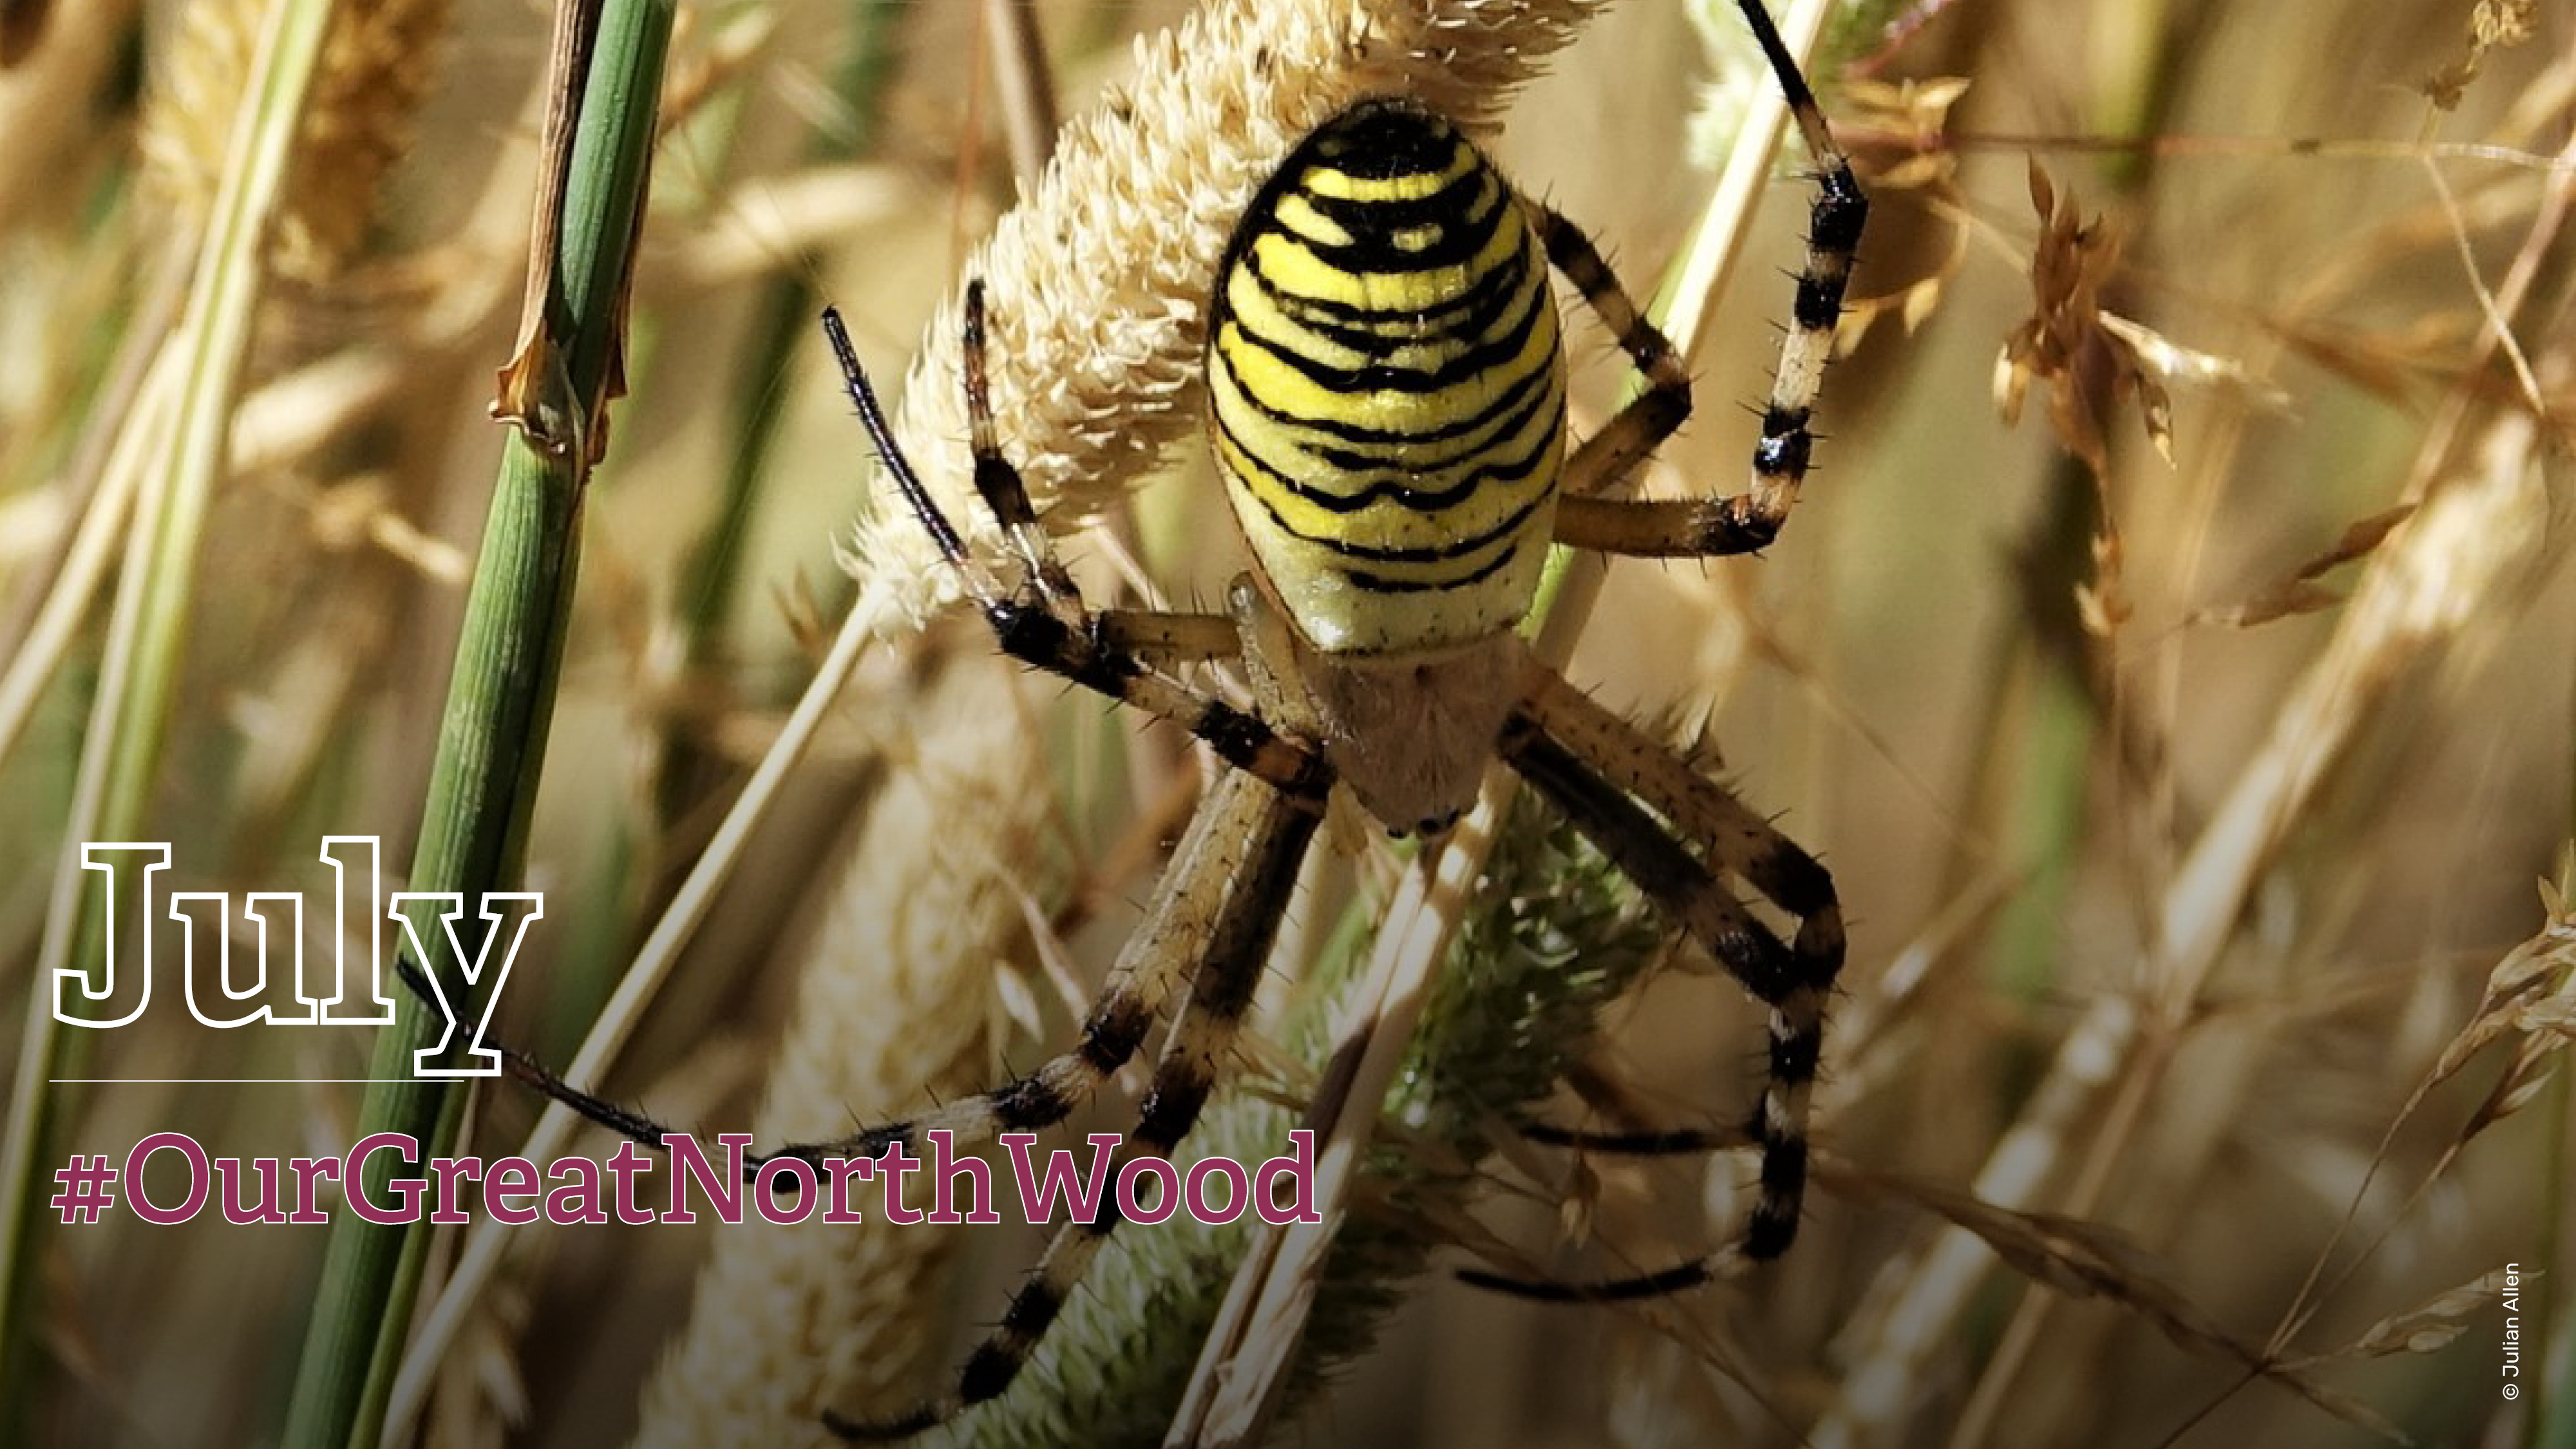 Female wasp spider calendar